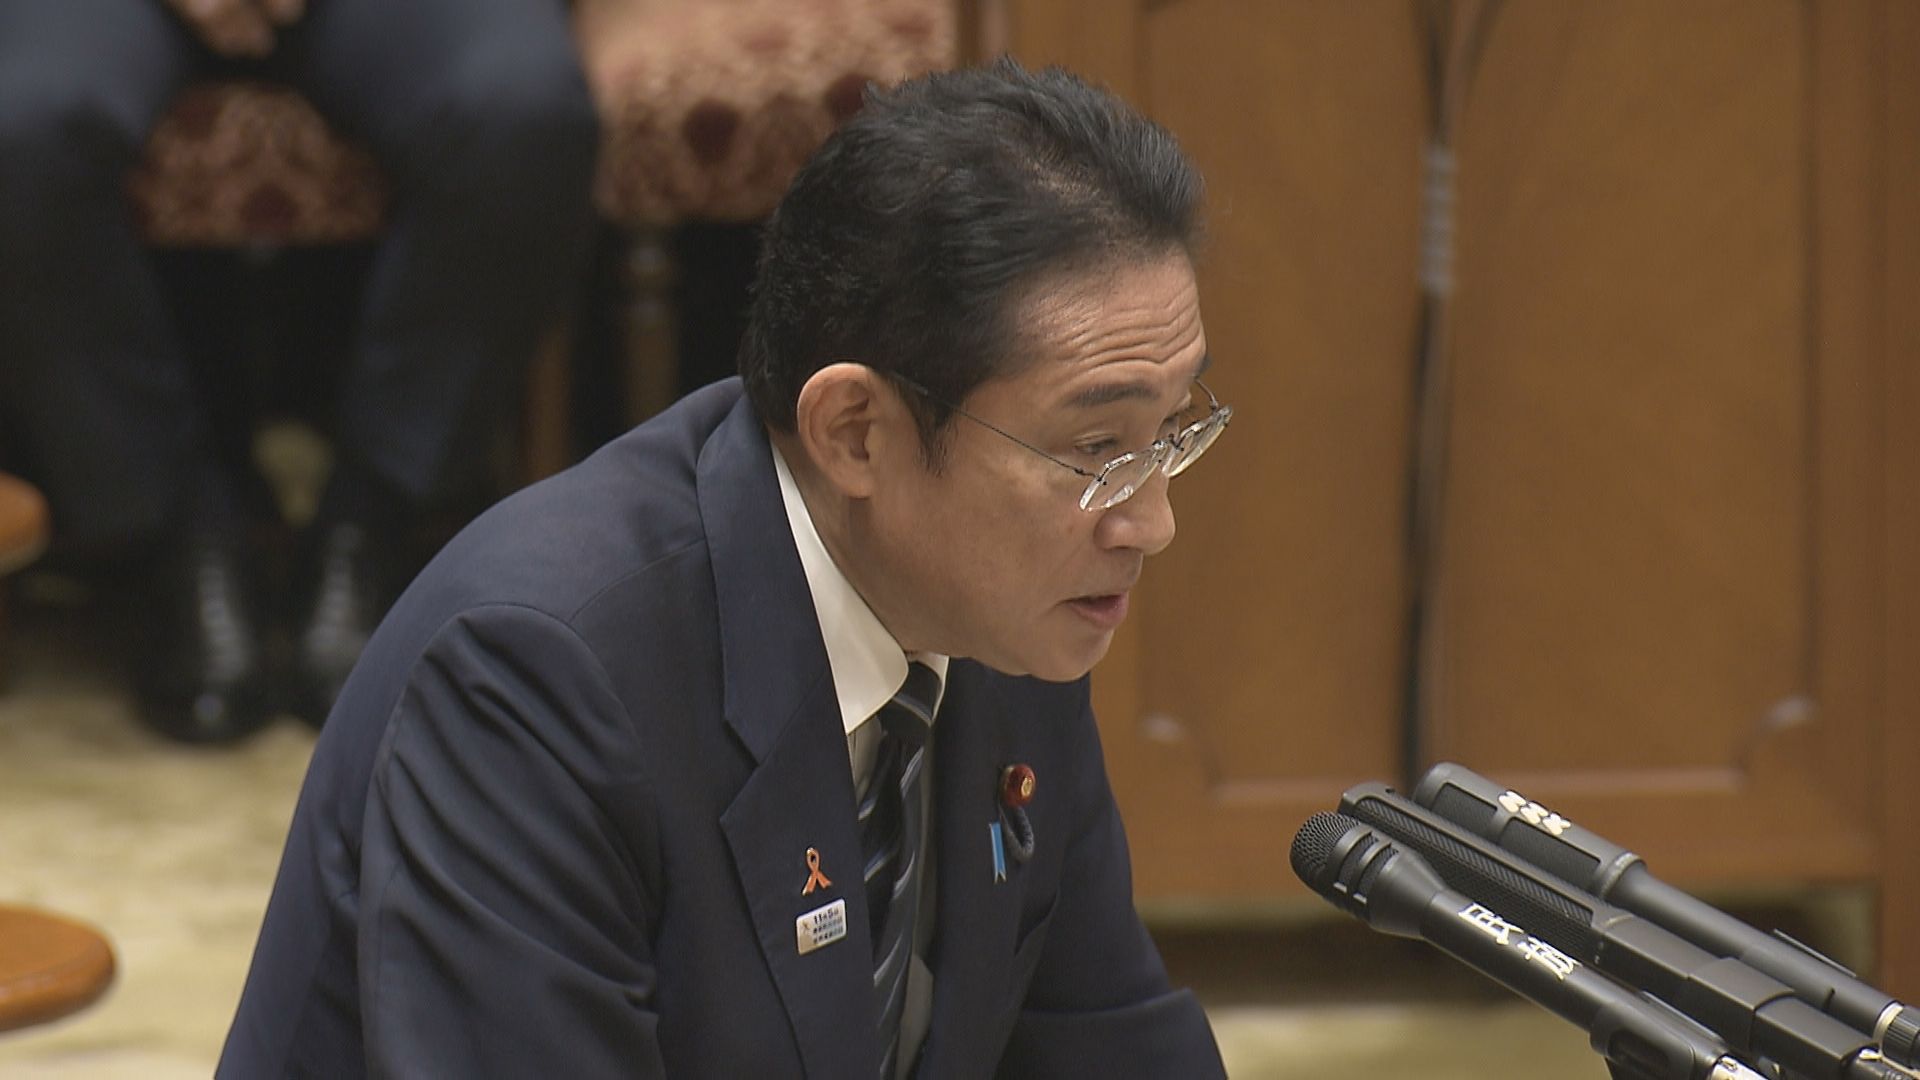 【速報】岸田総理「厳粛に受け止める必要」性別変更の手術要件「違憲」判断に